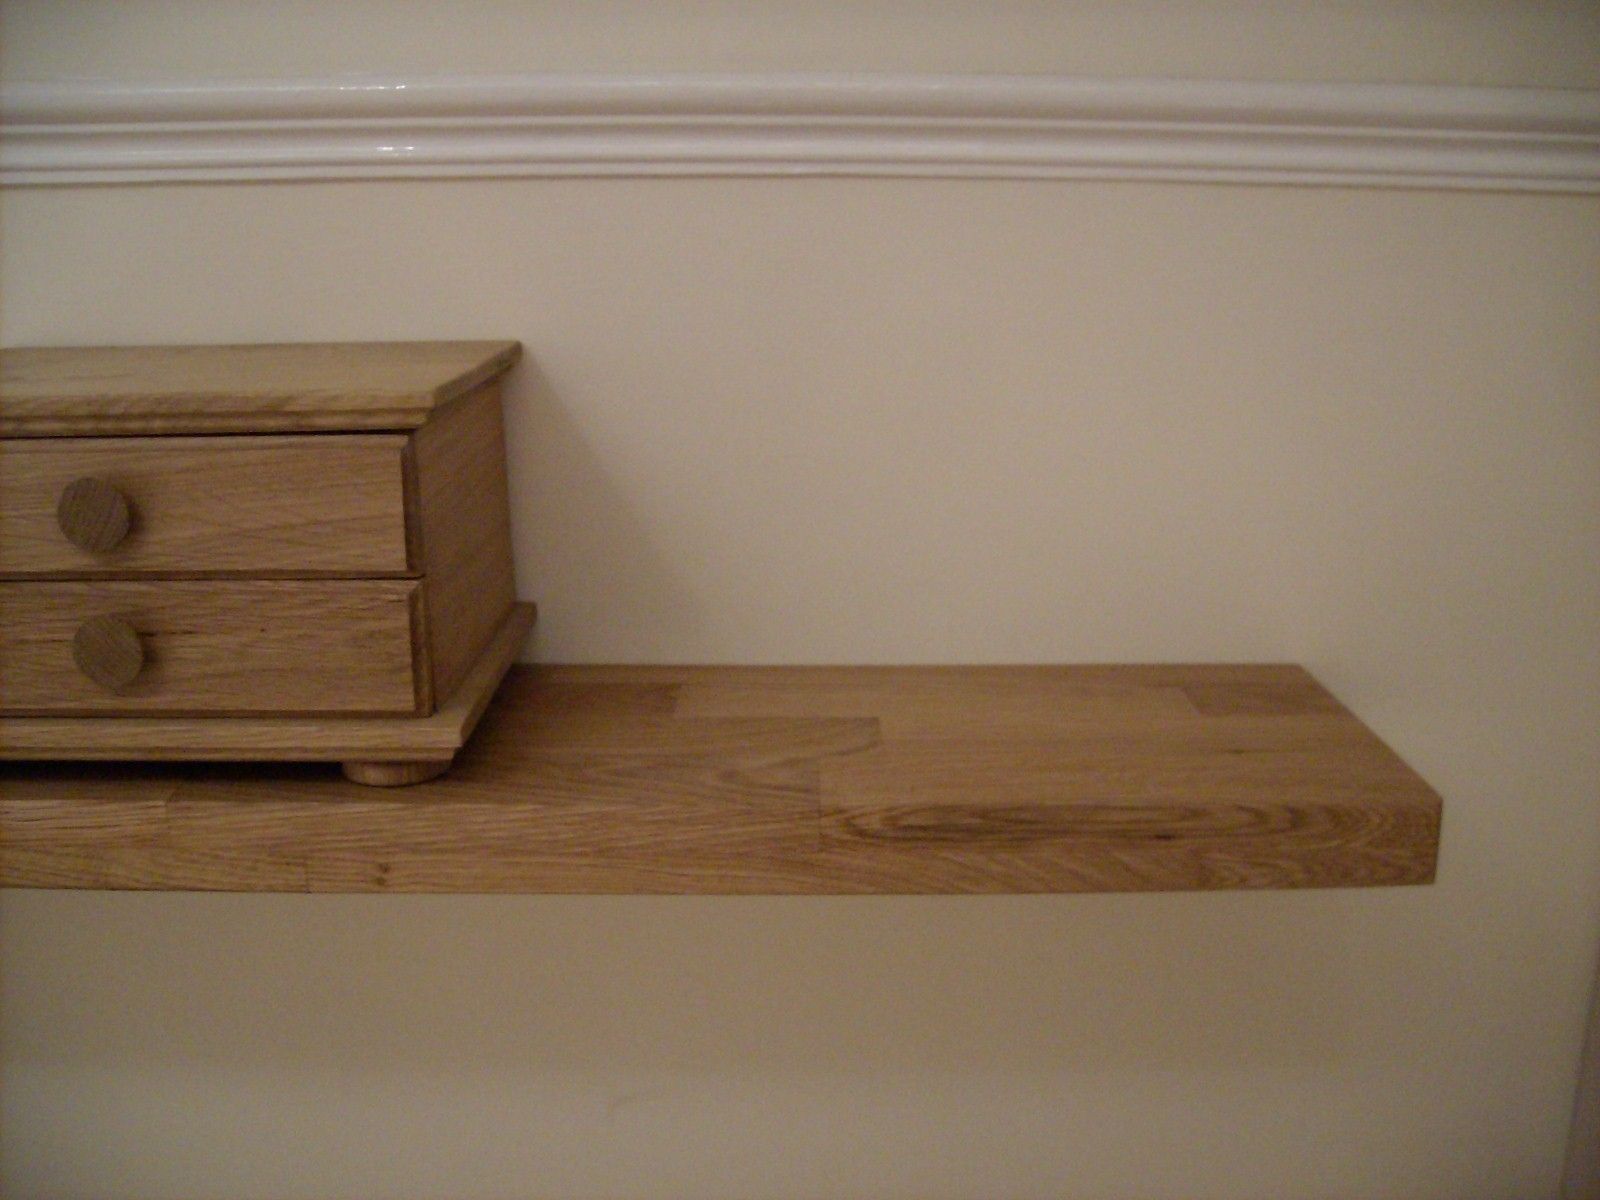 Floating Shelves Shelf Free Bookshelves Diy Wall For Kitchen For Oak Shelves (View 13 of 15)